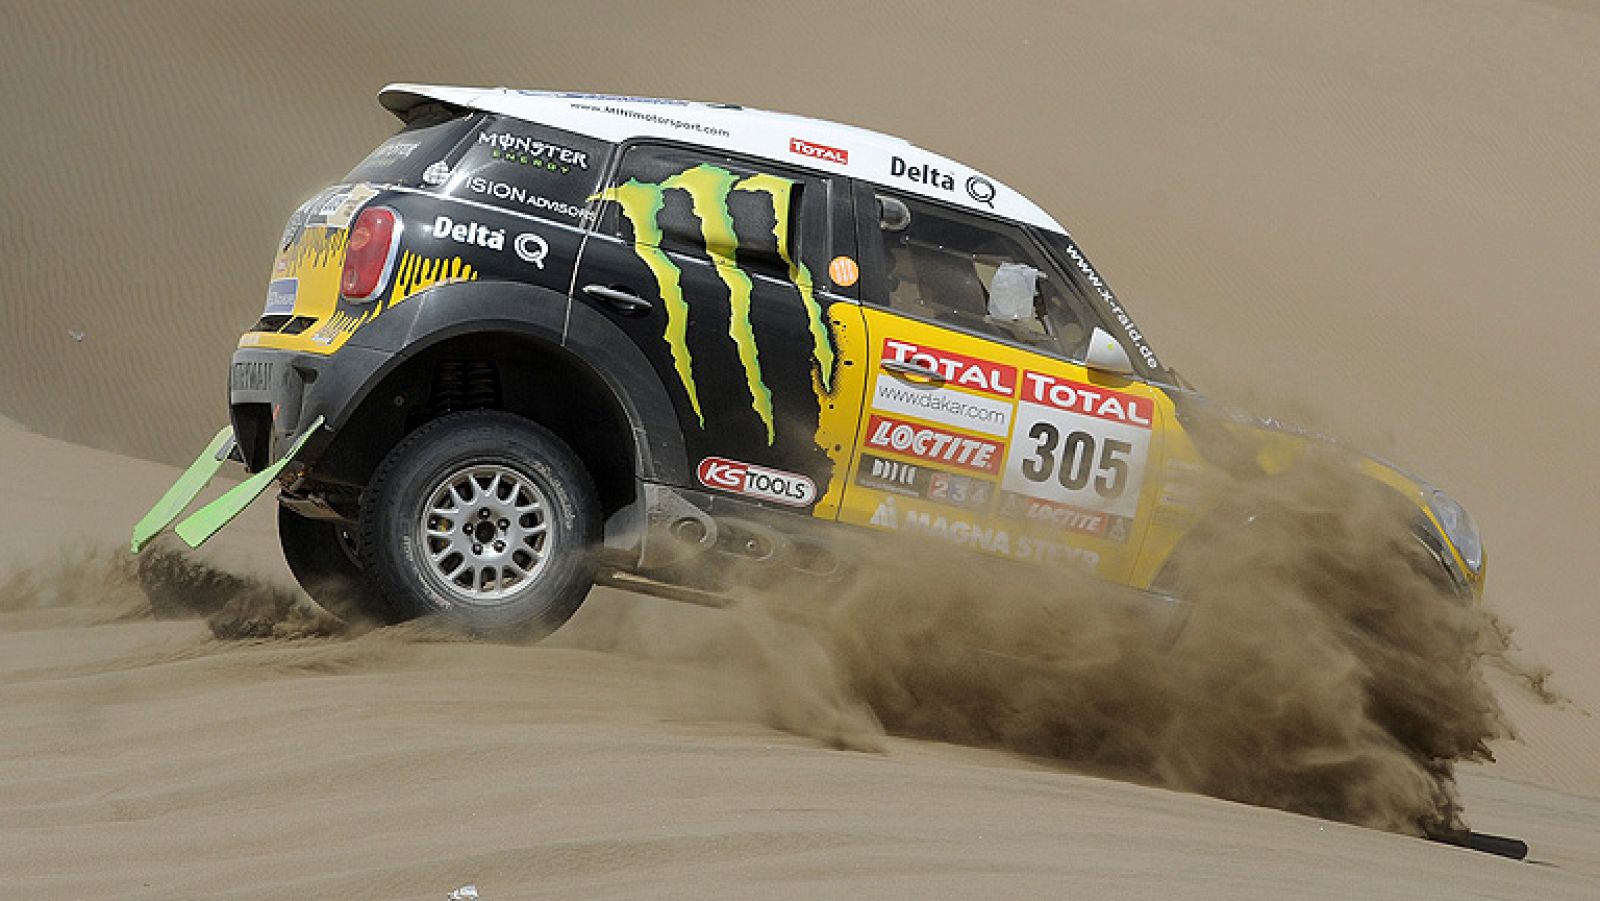 El piloto español Marc Coma (KTM) se situó cerca del liderato en  la categoría de motos del Rally Dakar, ostentado por su gran rival,  el francés Cyril Despres (KTM), tras la disputa este miércoles de la  décima etapa, una especial de 377 kilómetros